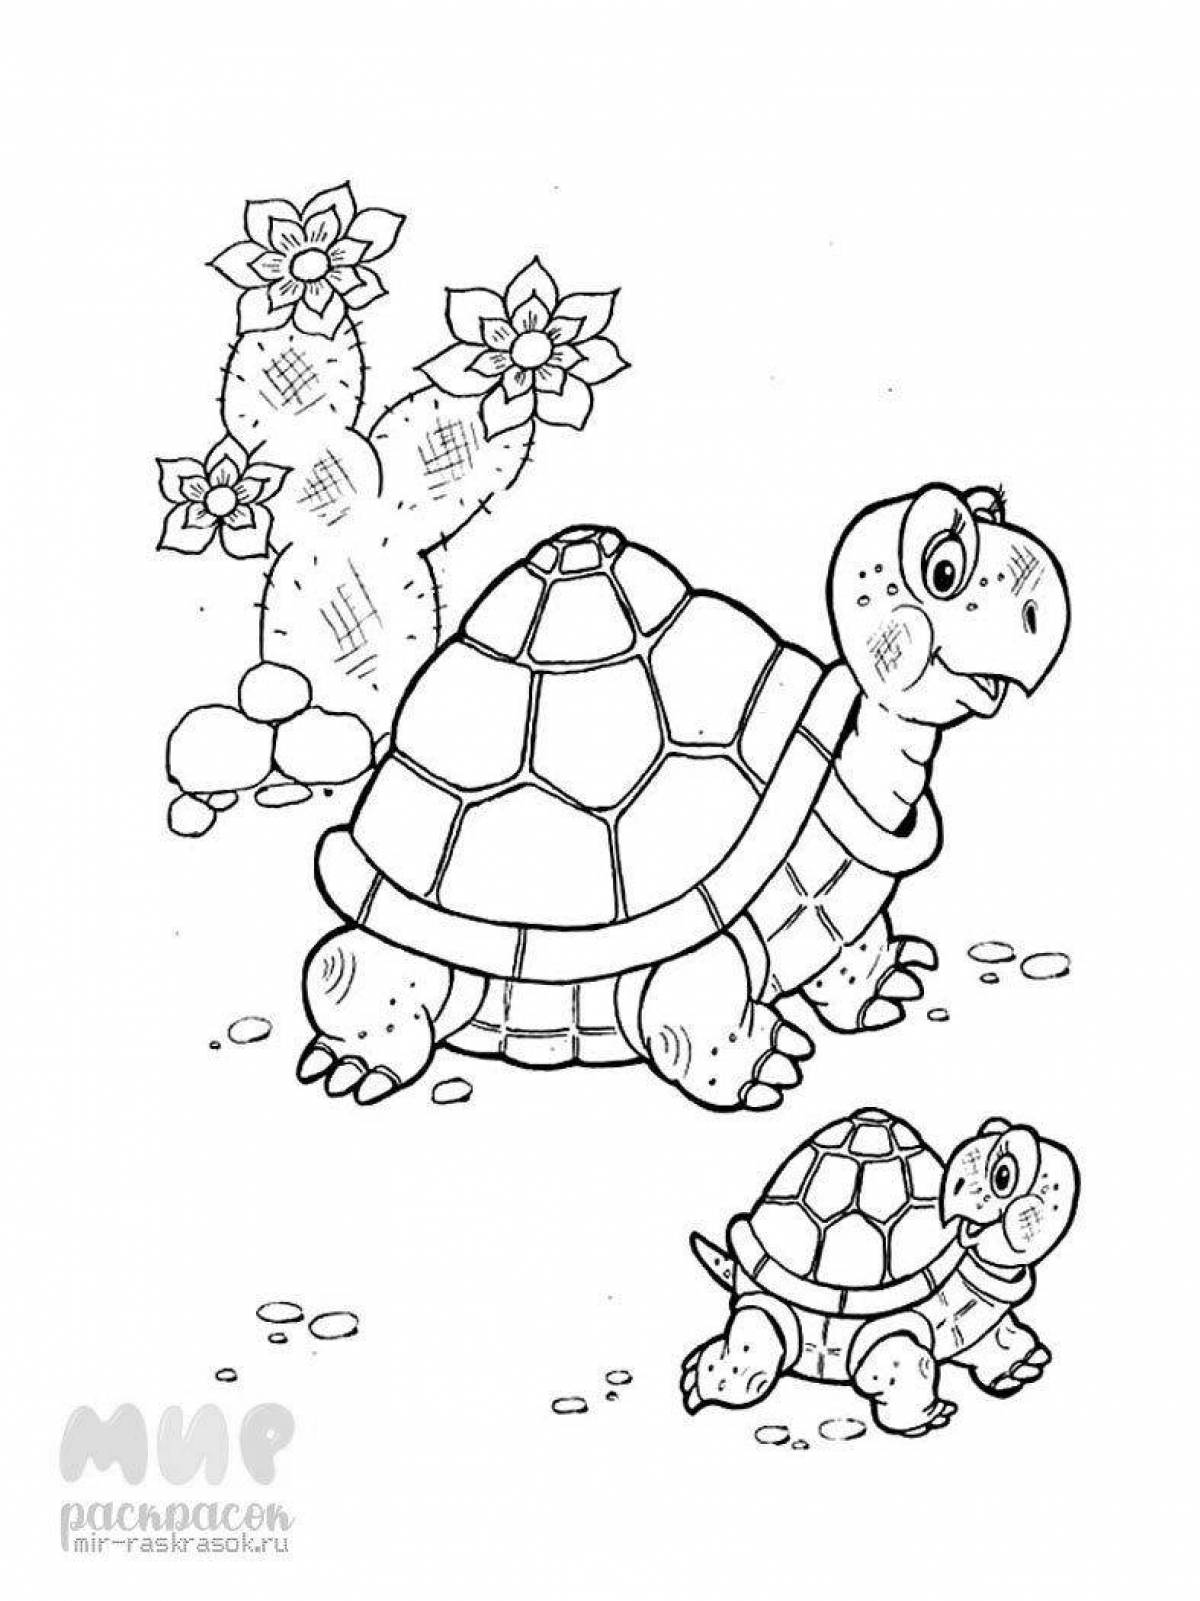 Веселая раскраска черепаха для детей 6-7 лет